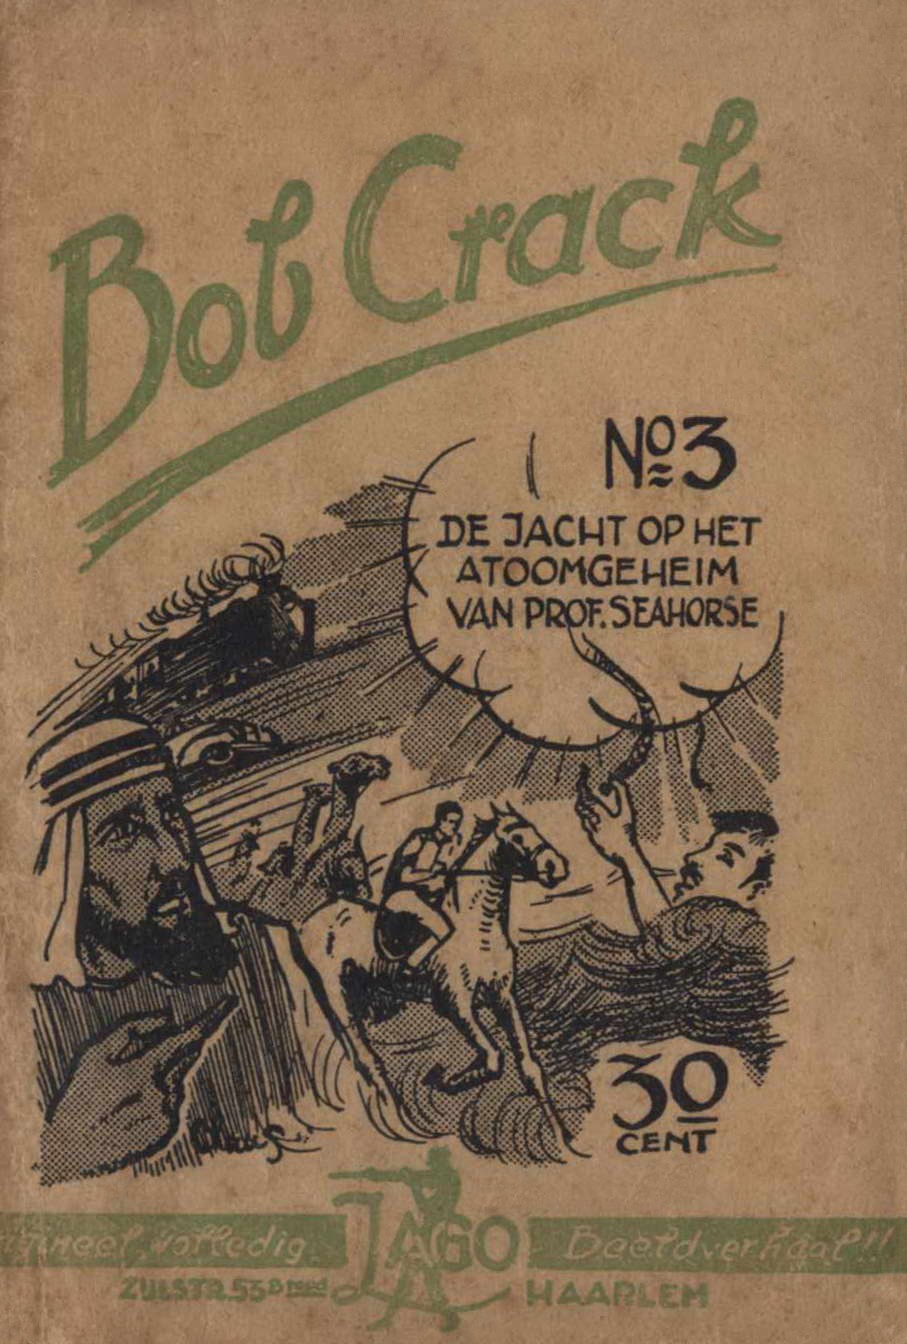 Book Cover For Bob Crack 3 De jacht op het atoomwapen van Prof. Seahorse